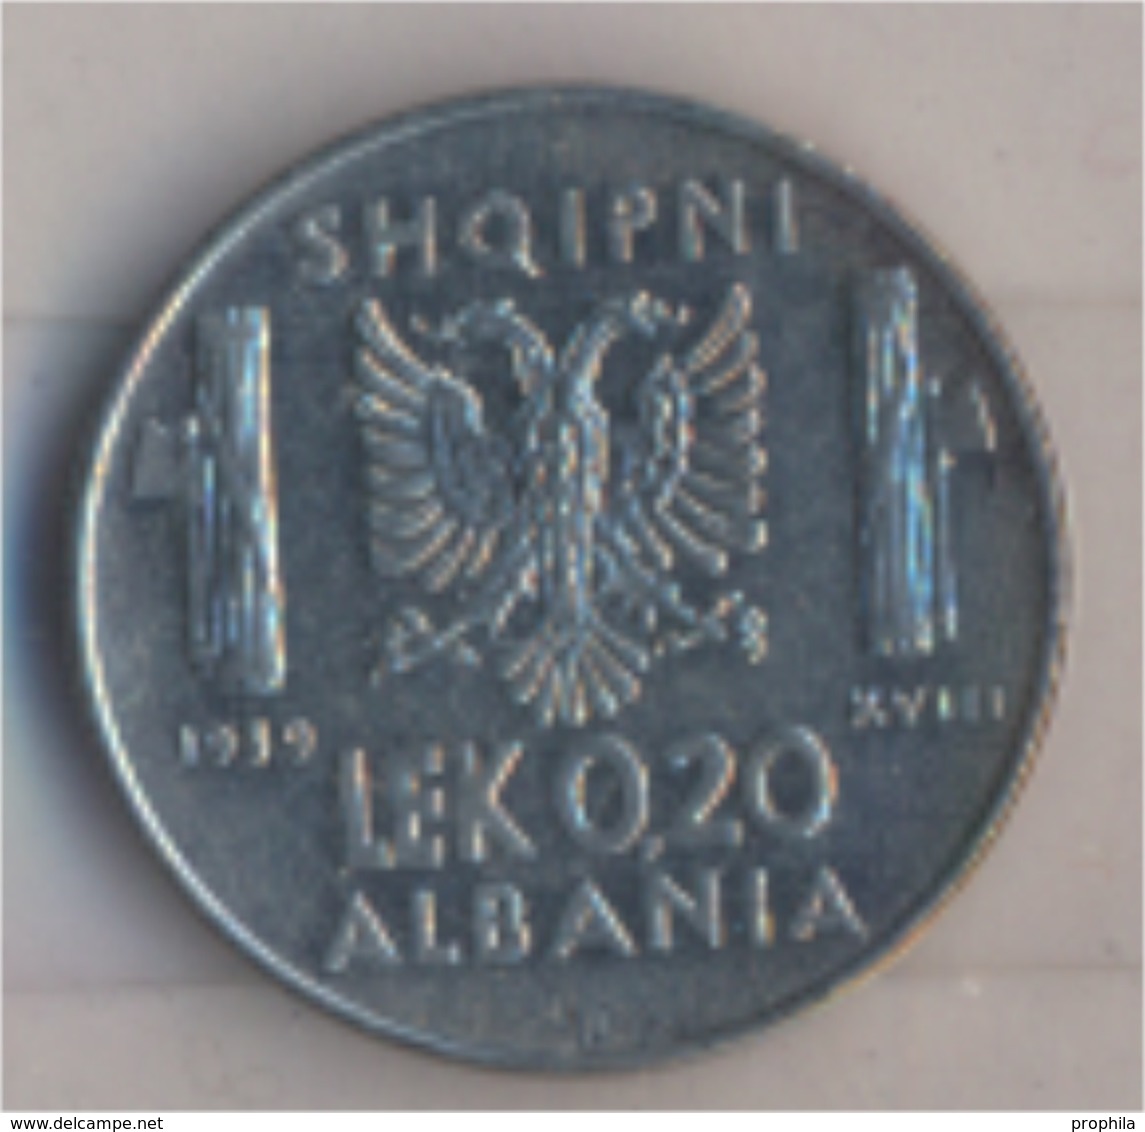 Albanien KM-Nr. : 29 1939 R Vorzüglich Stahl 1939 0,20 Lek Italienische Besetzung (9157923 - Albania